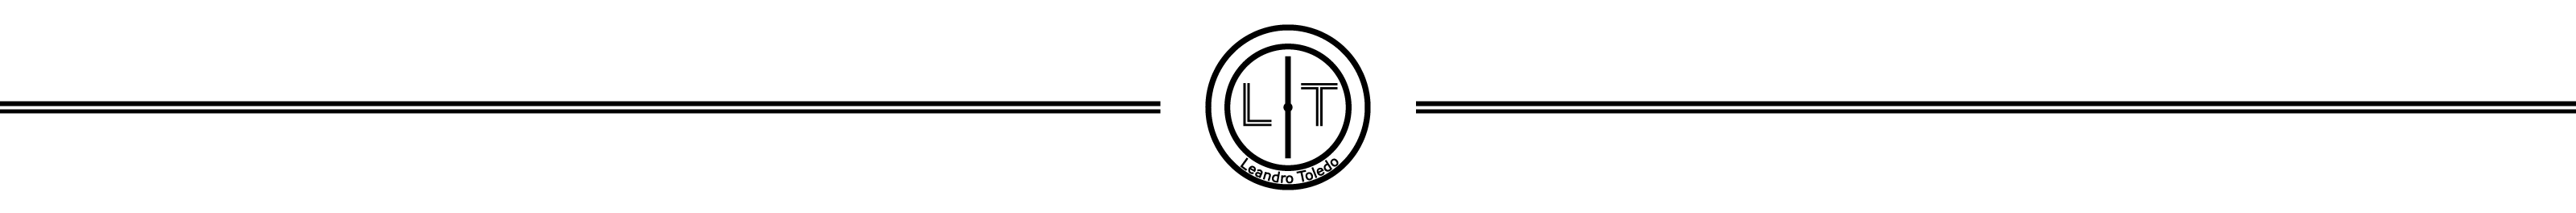 Leandro Toledo profil başlığı